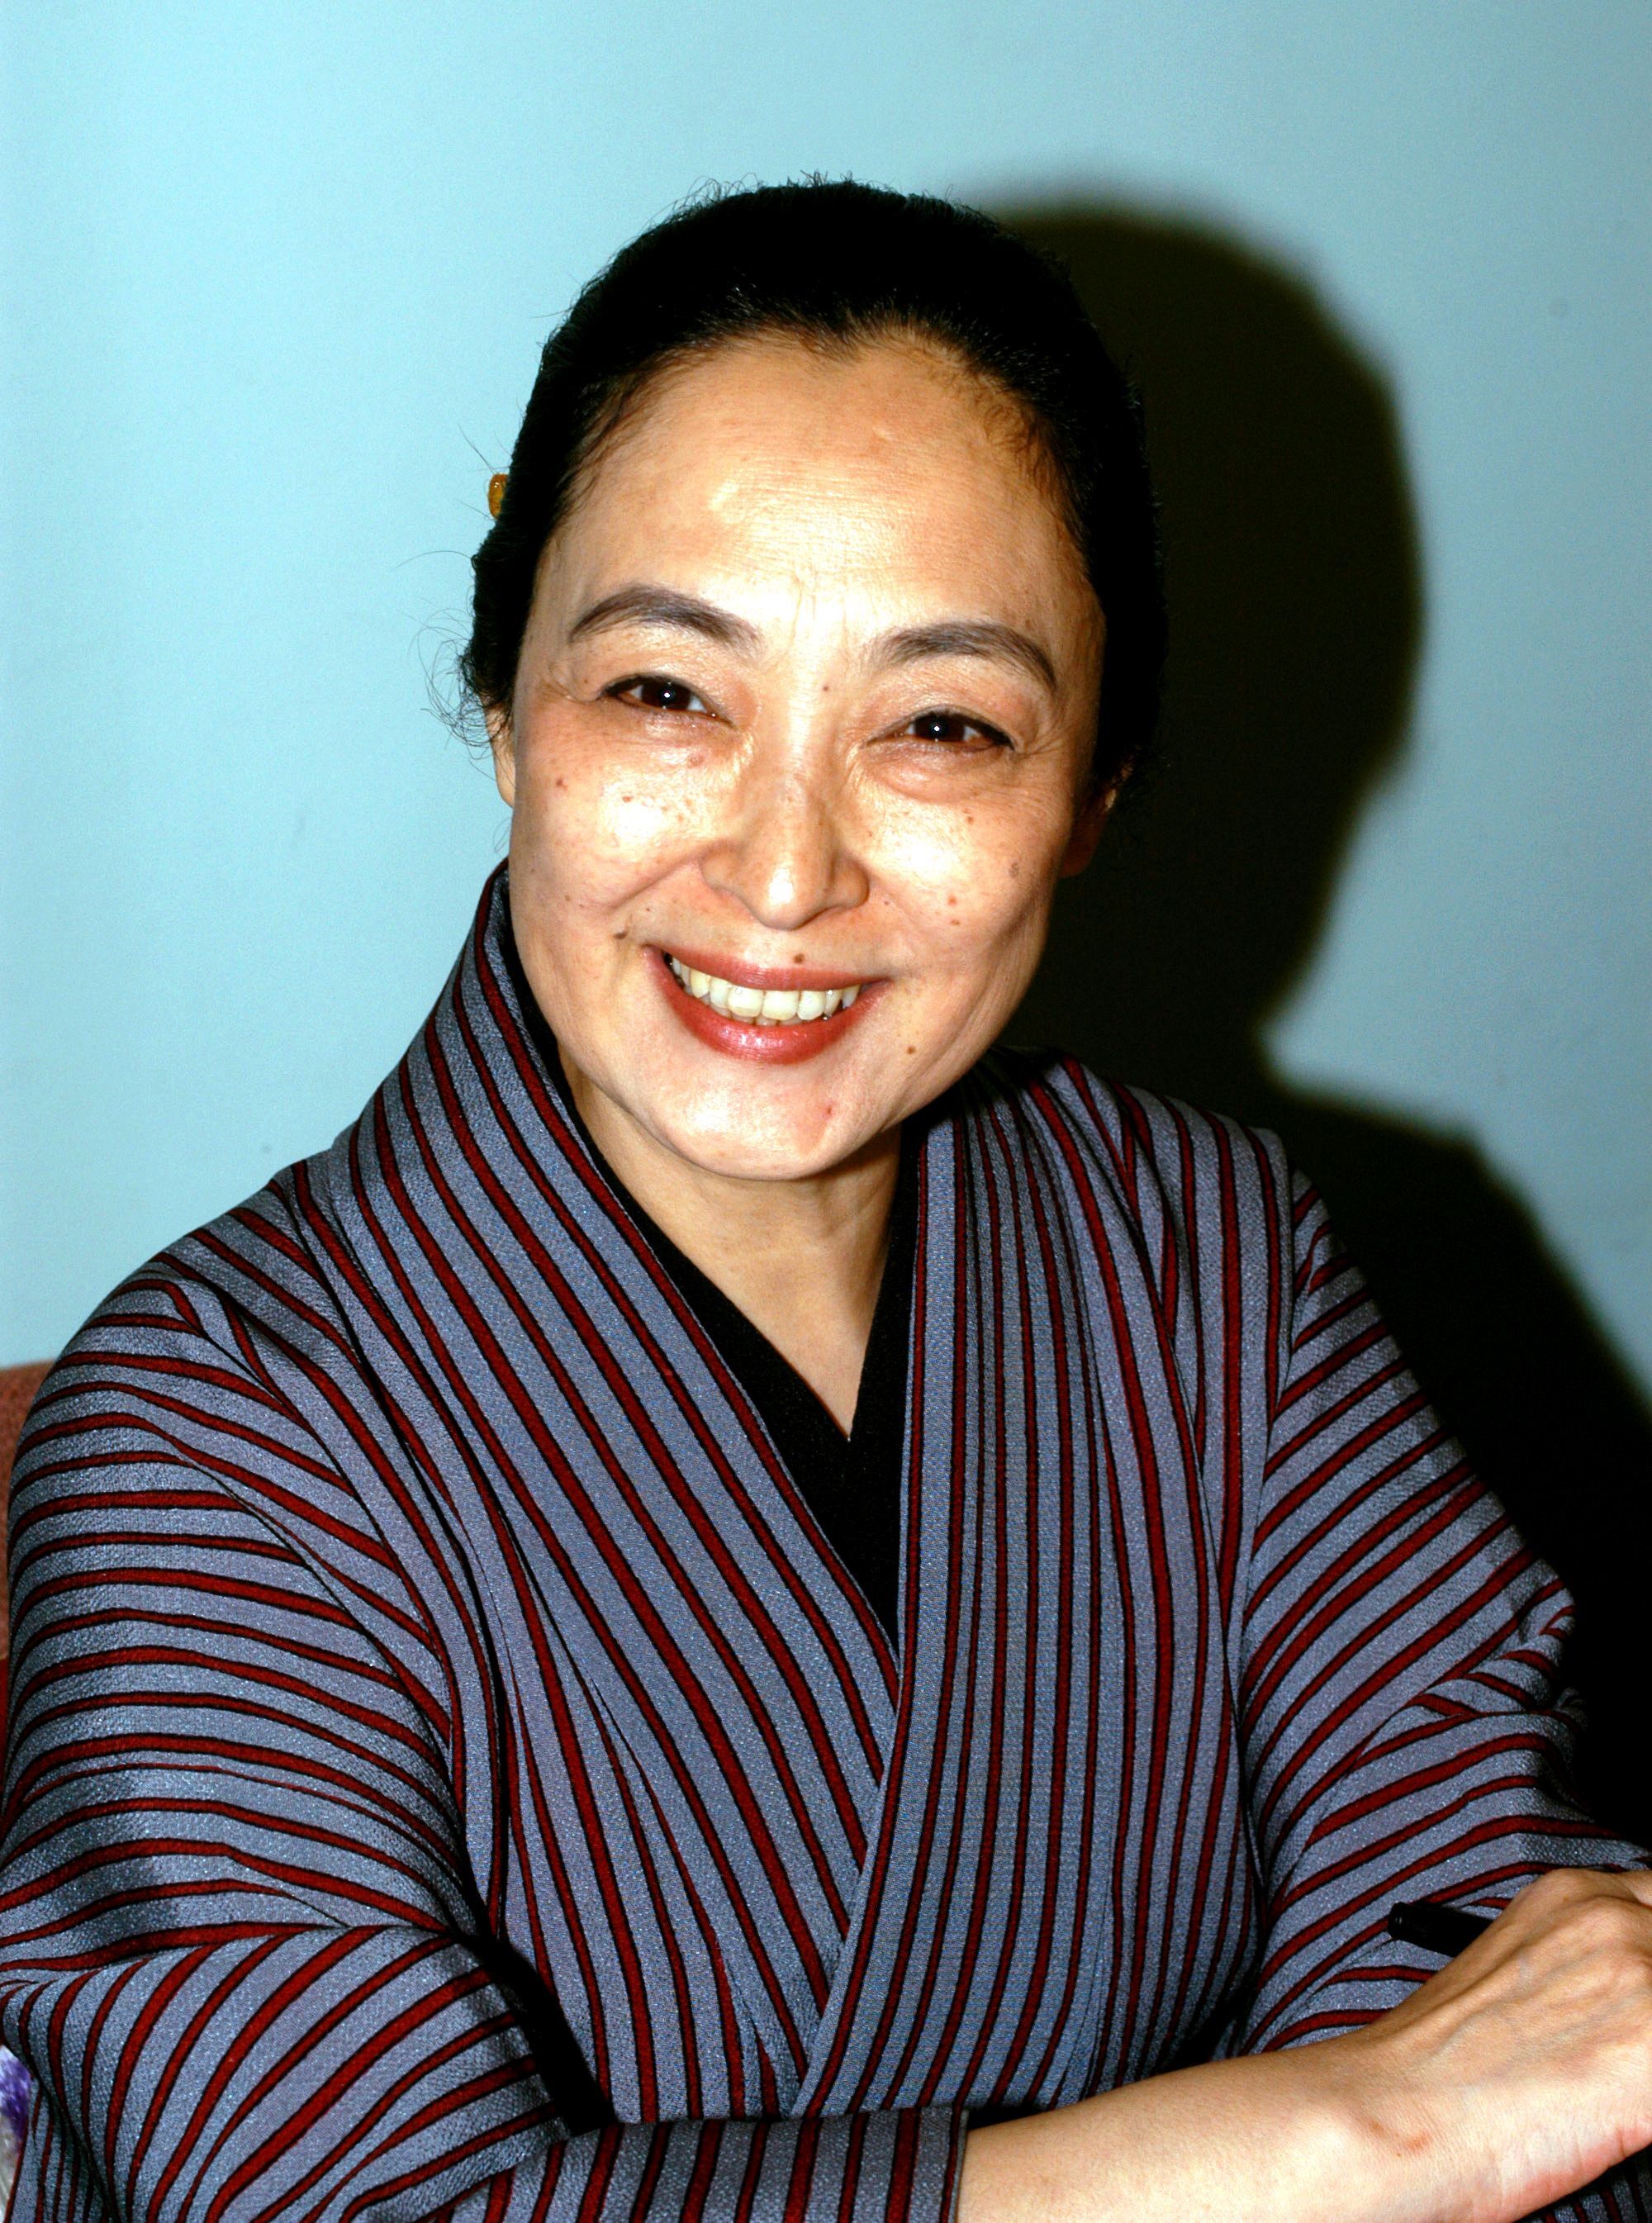 Mineko Iwasaki durante la presentación de su libro "Geisha, A Life" el 4 de octubre de 2002 en Beverly Hills, California. | Foto: Getty Images